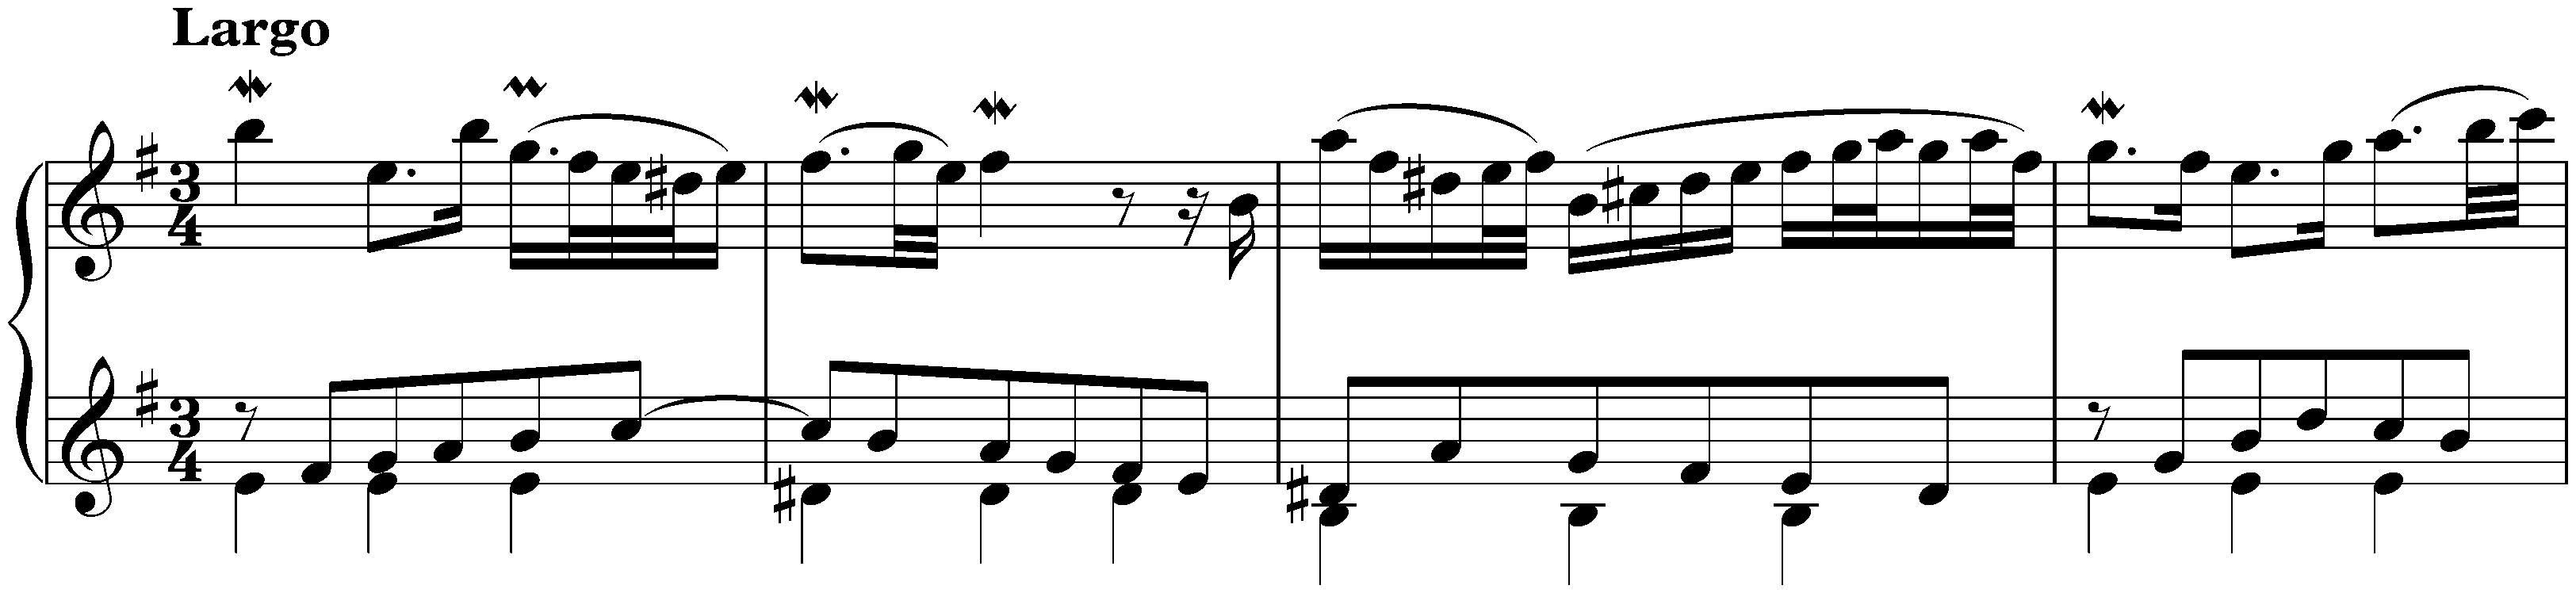 Concerto in G major after Antonio Vivaldi, BWV 973; 2. Largo